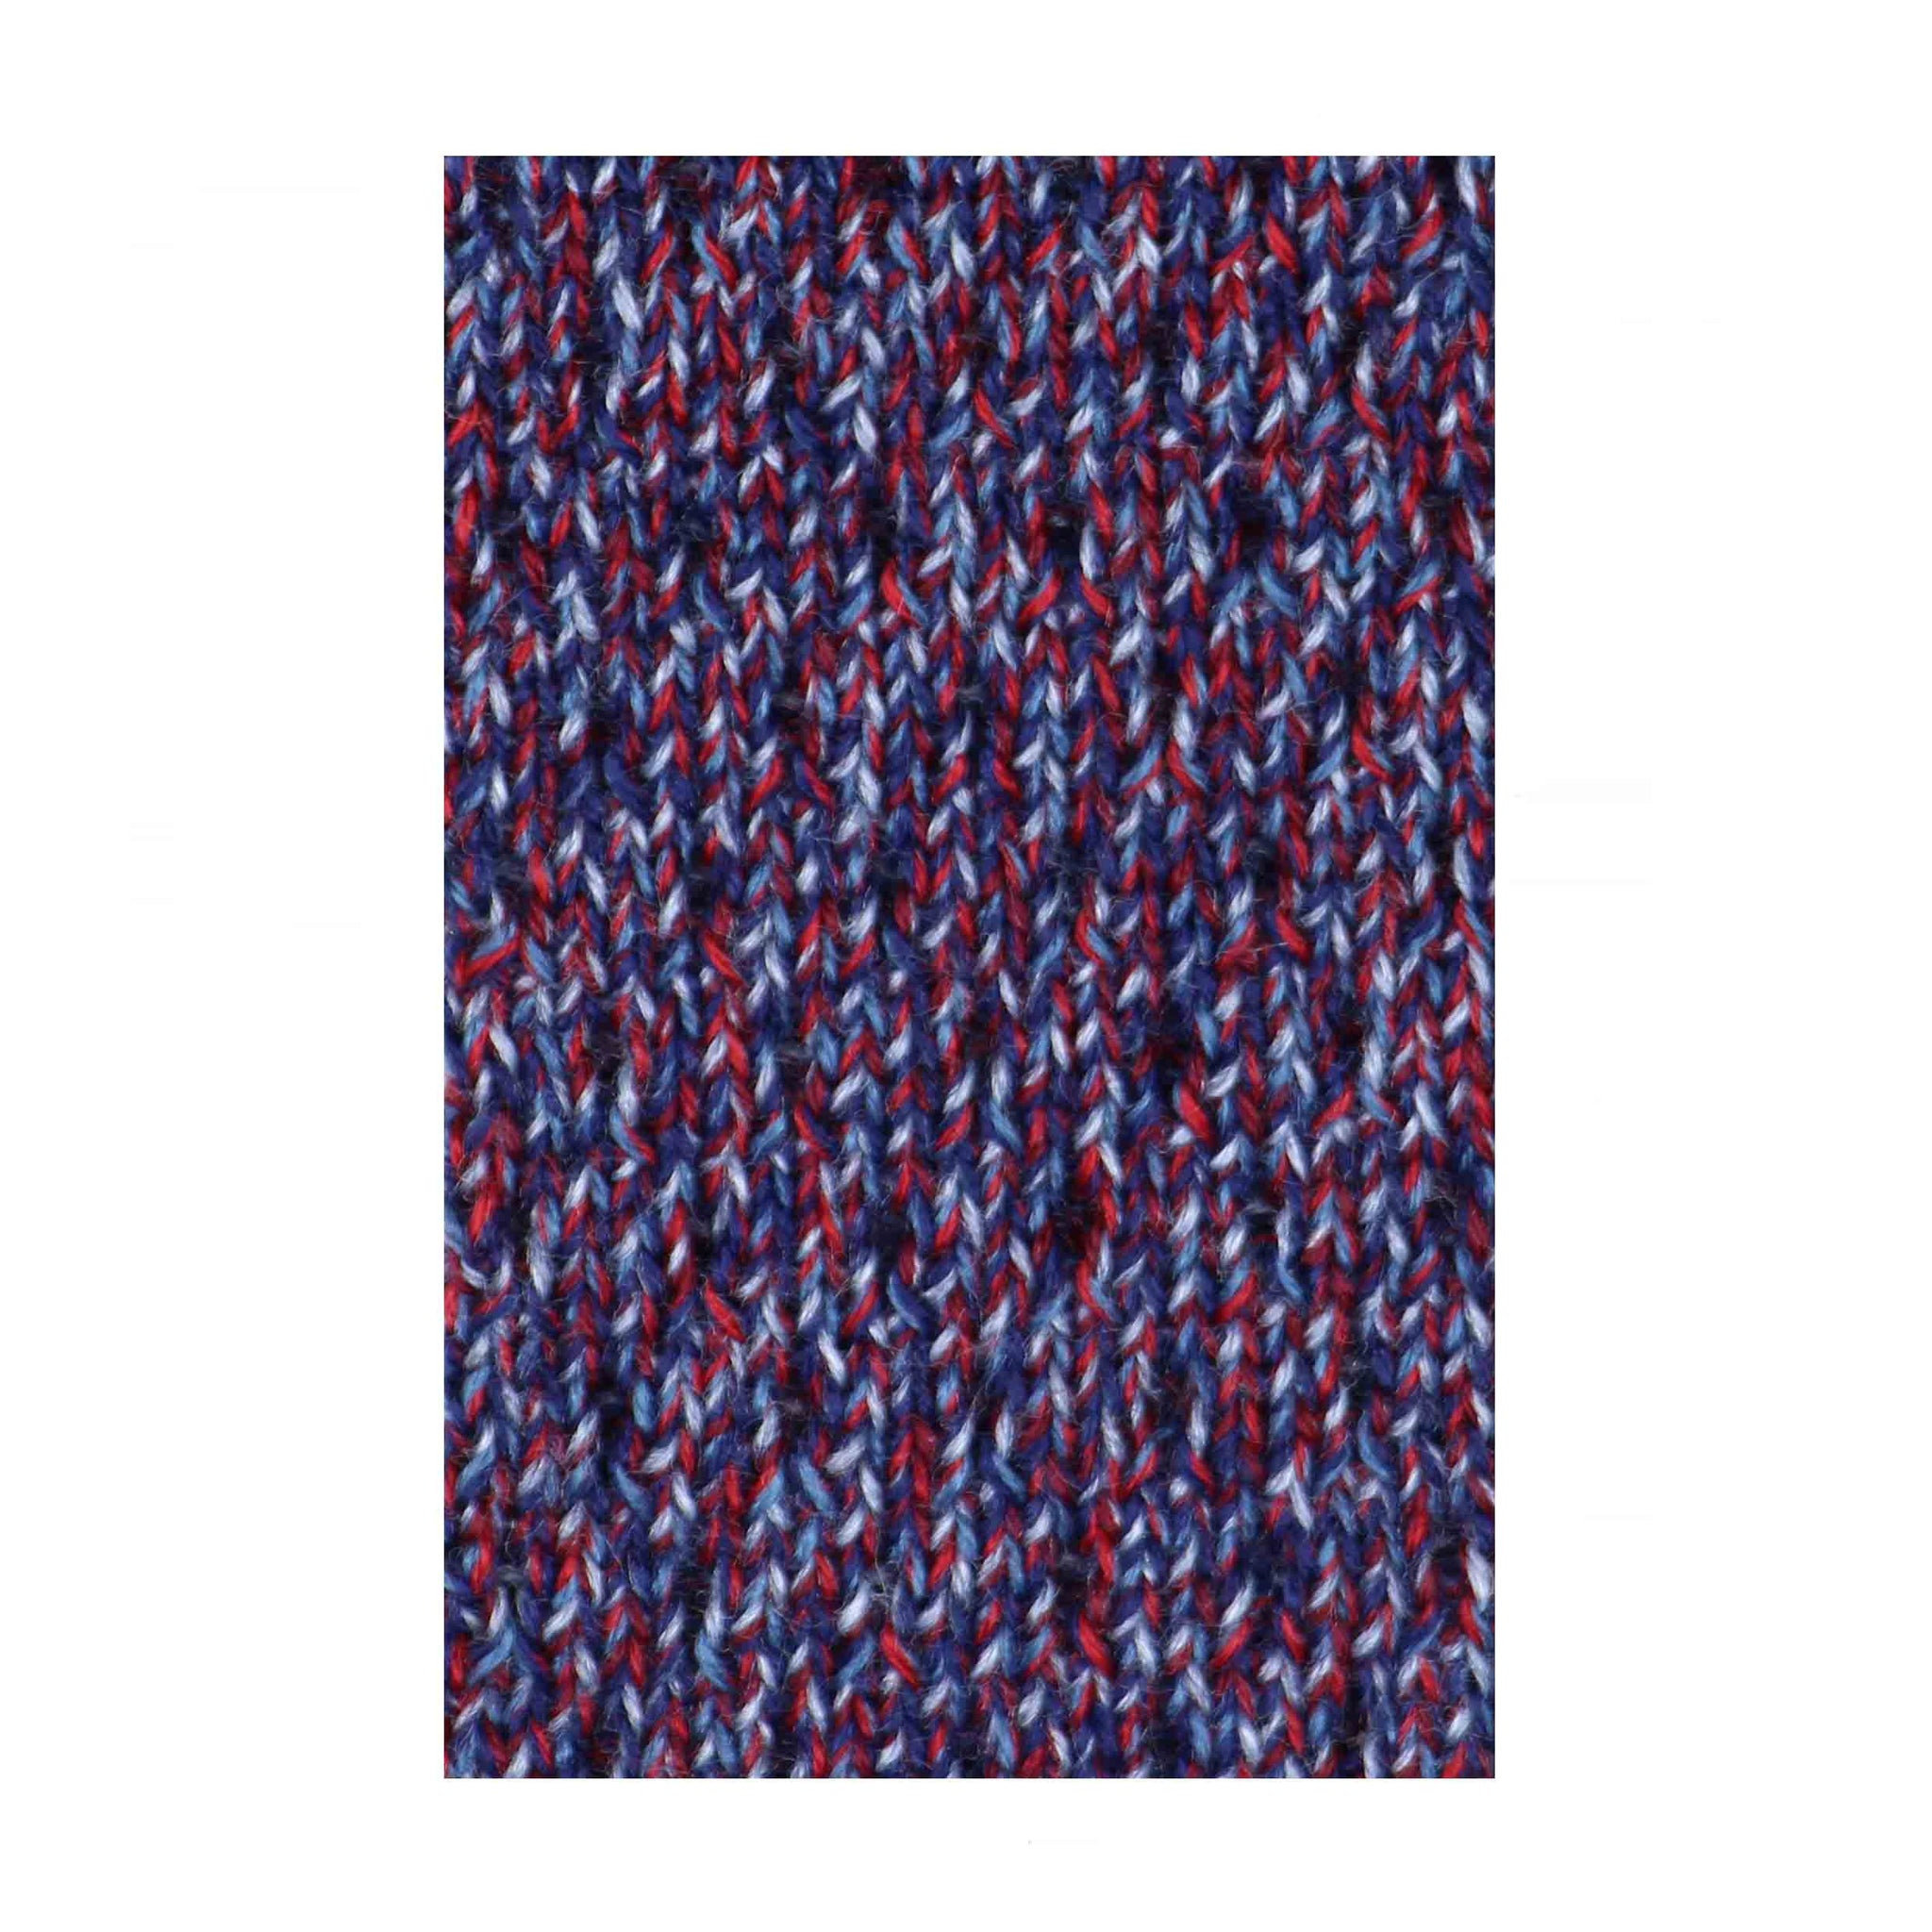 Cravate Cabarfeidh tricot de laine rouge bleu gris